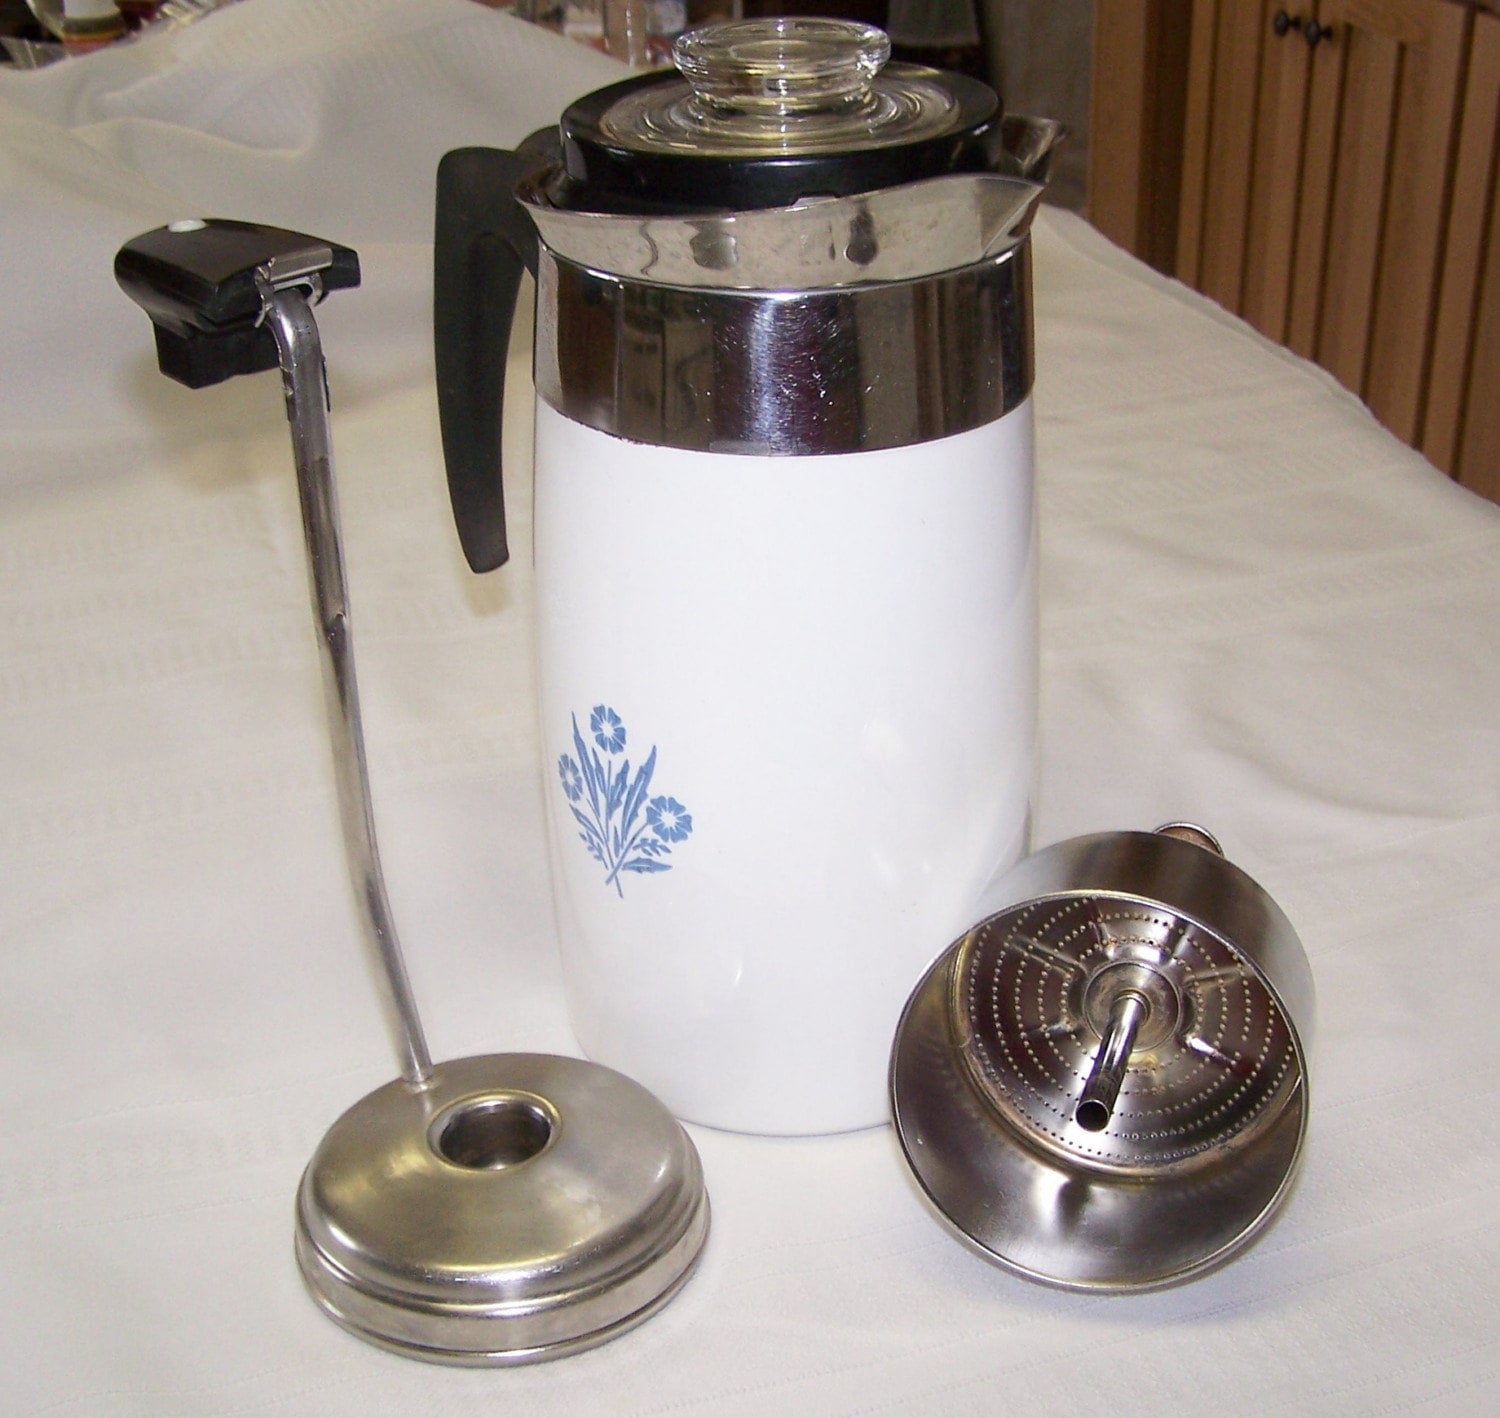 Corning Electric Coffee Pot in Blue CornFlower Pattern